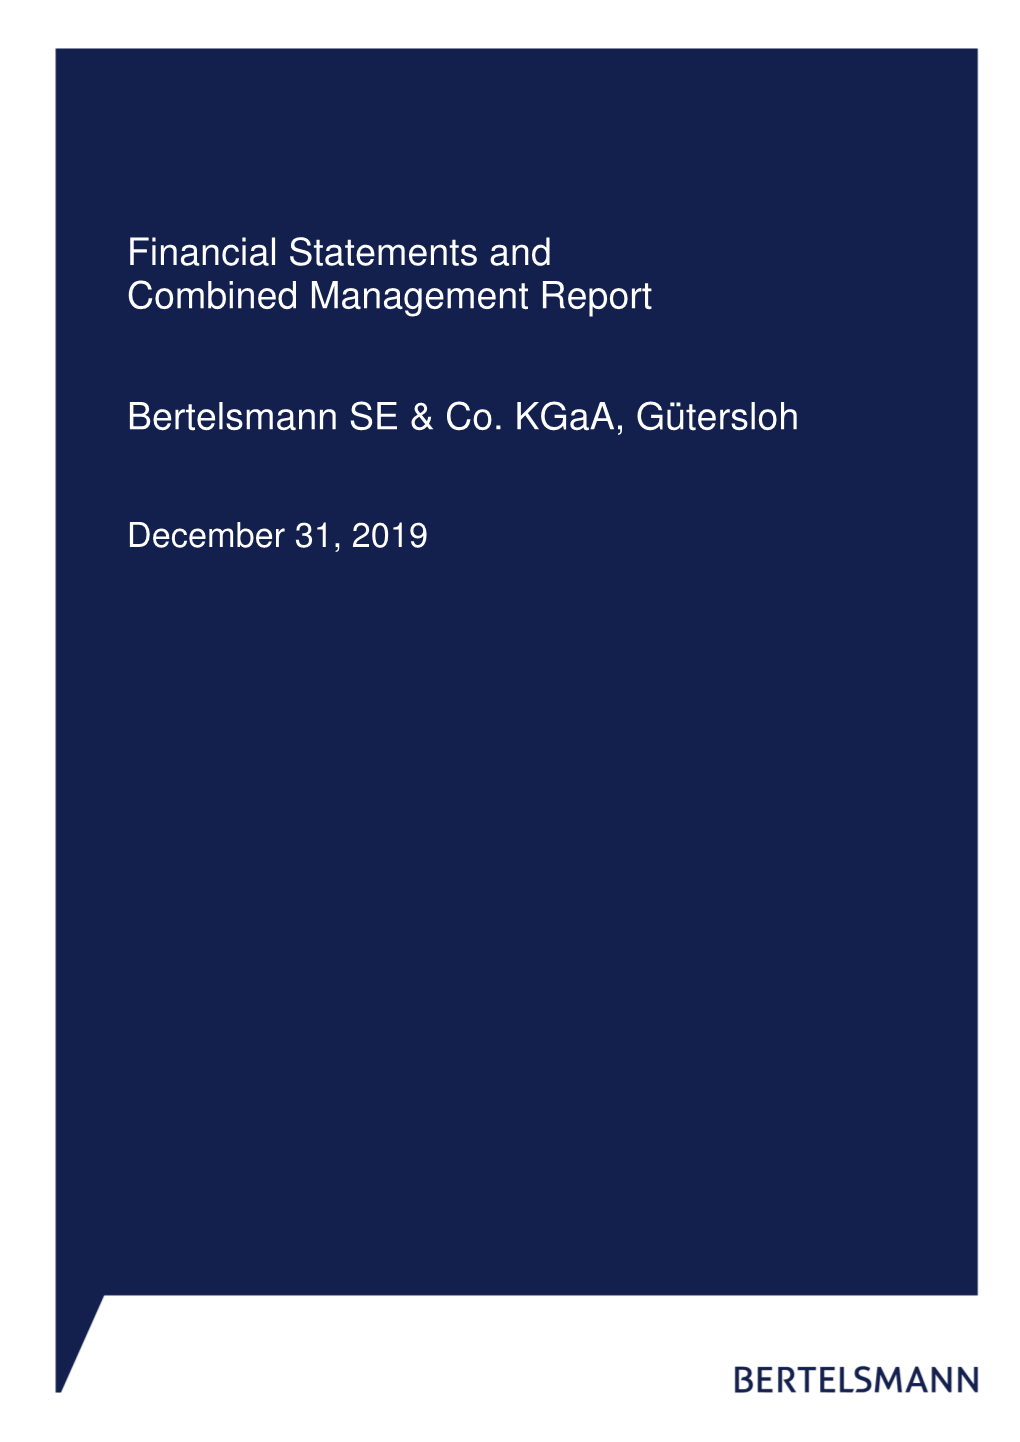 2019 Financial Statements for Bertelsmann SE & Co. Kgaa